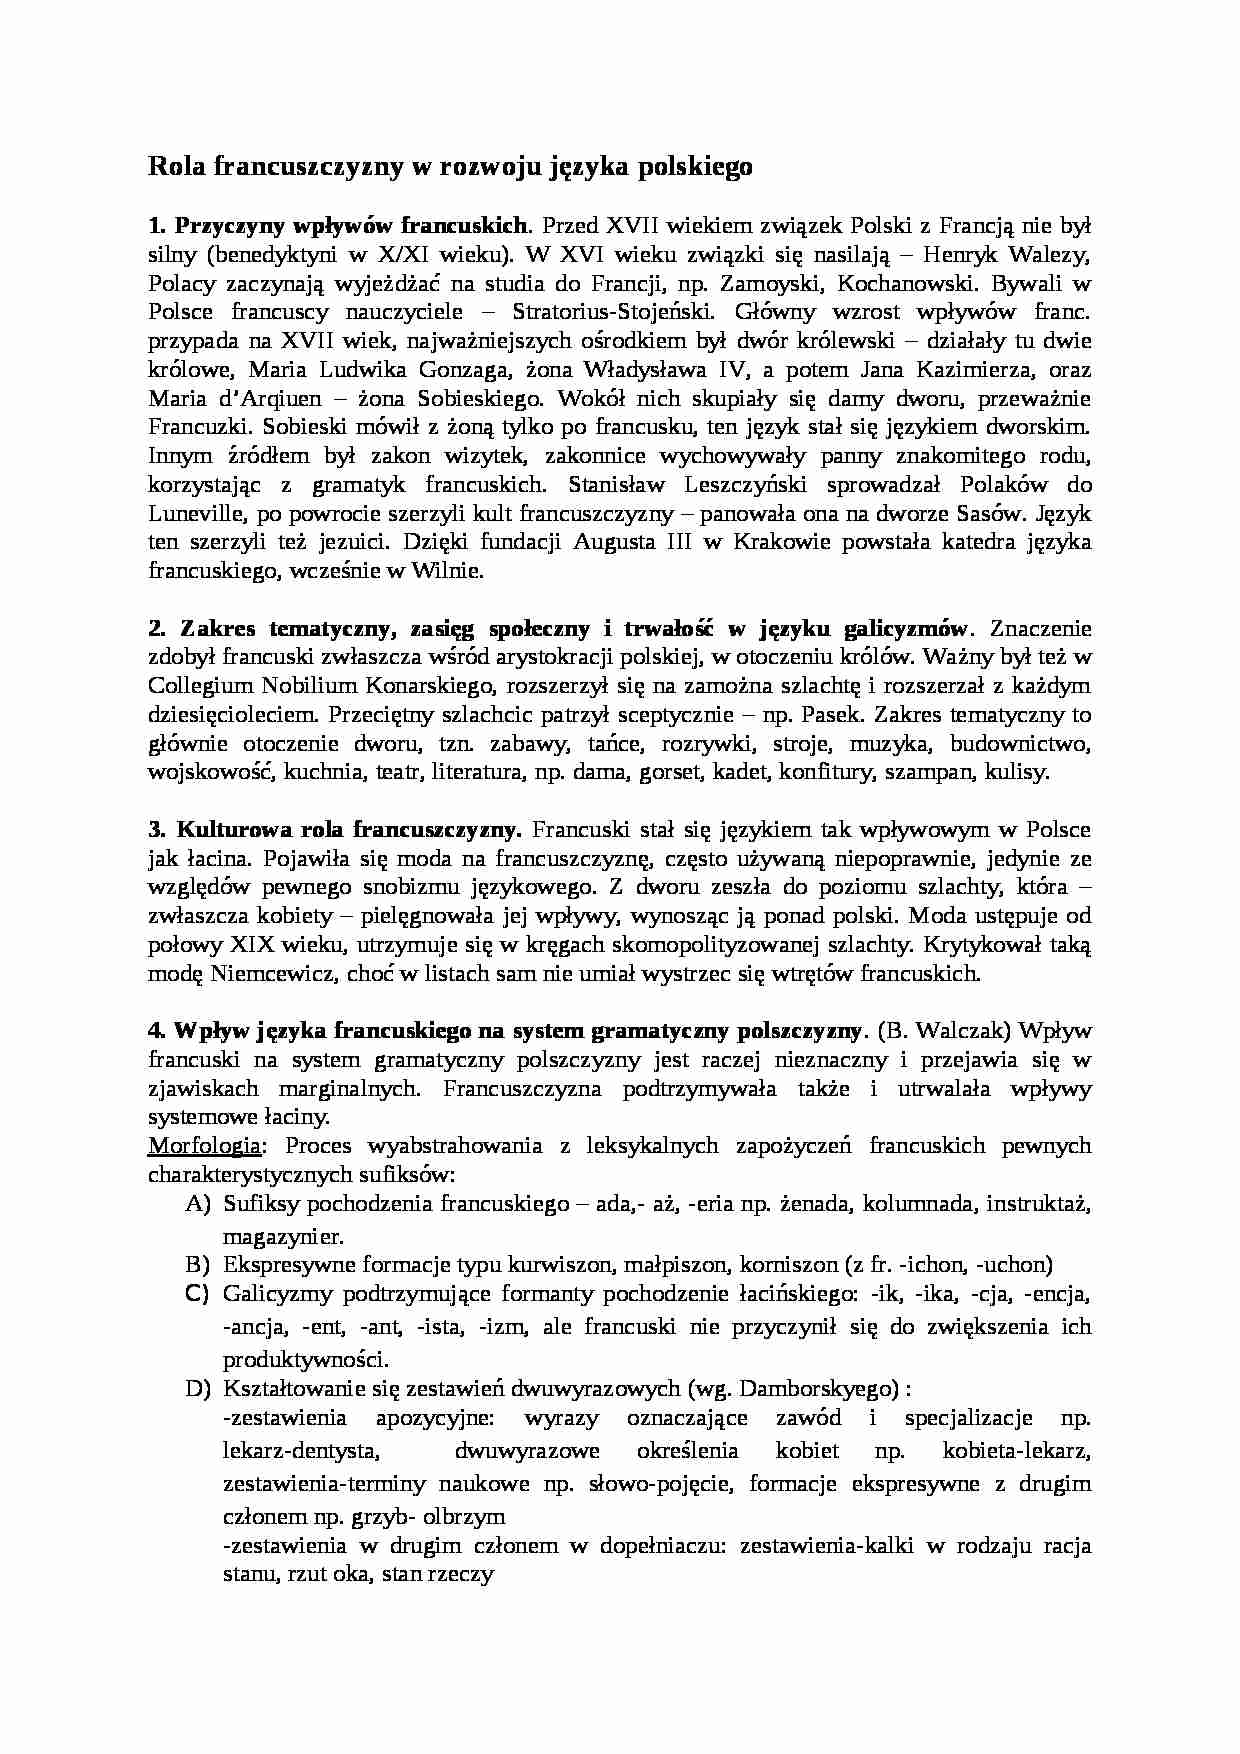 Rola francuszczyzny w rozwoju języka polskiego-opracowanie - strona 1